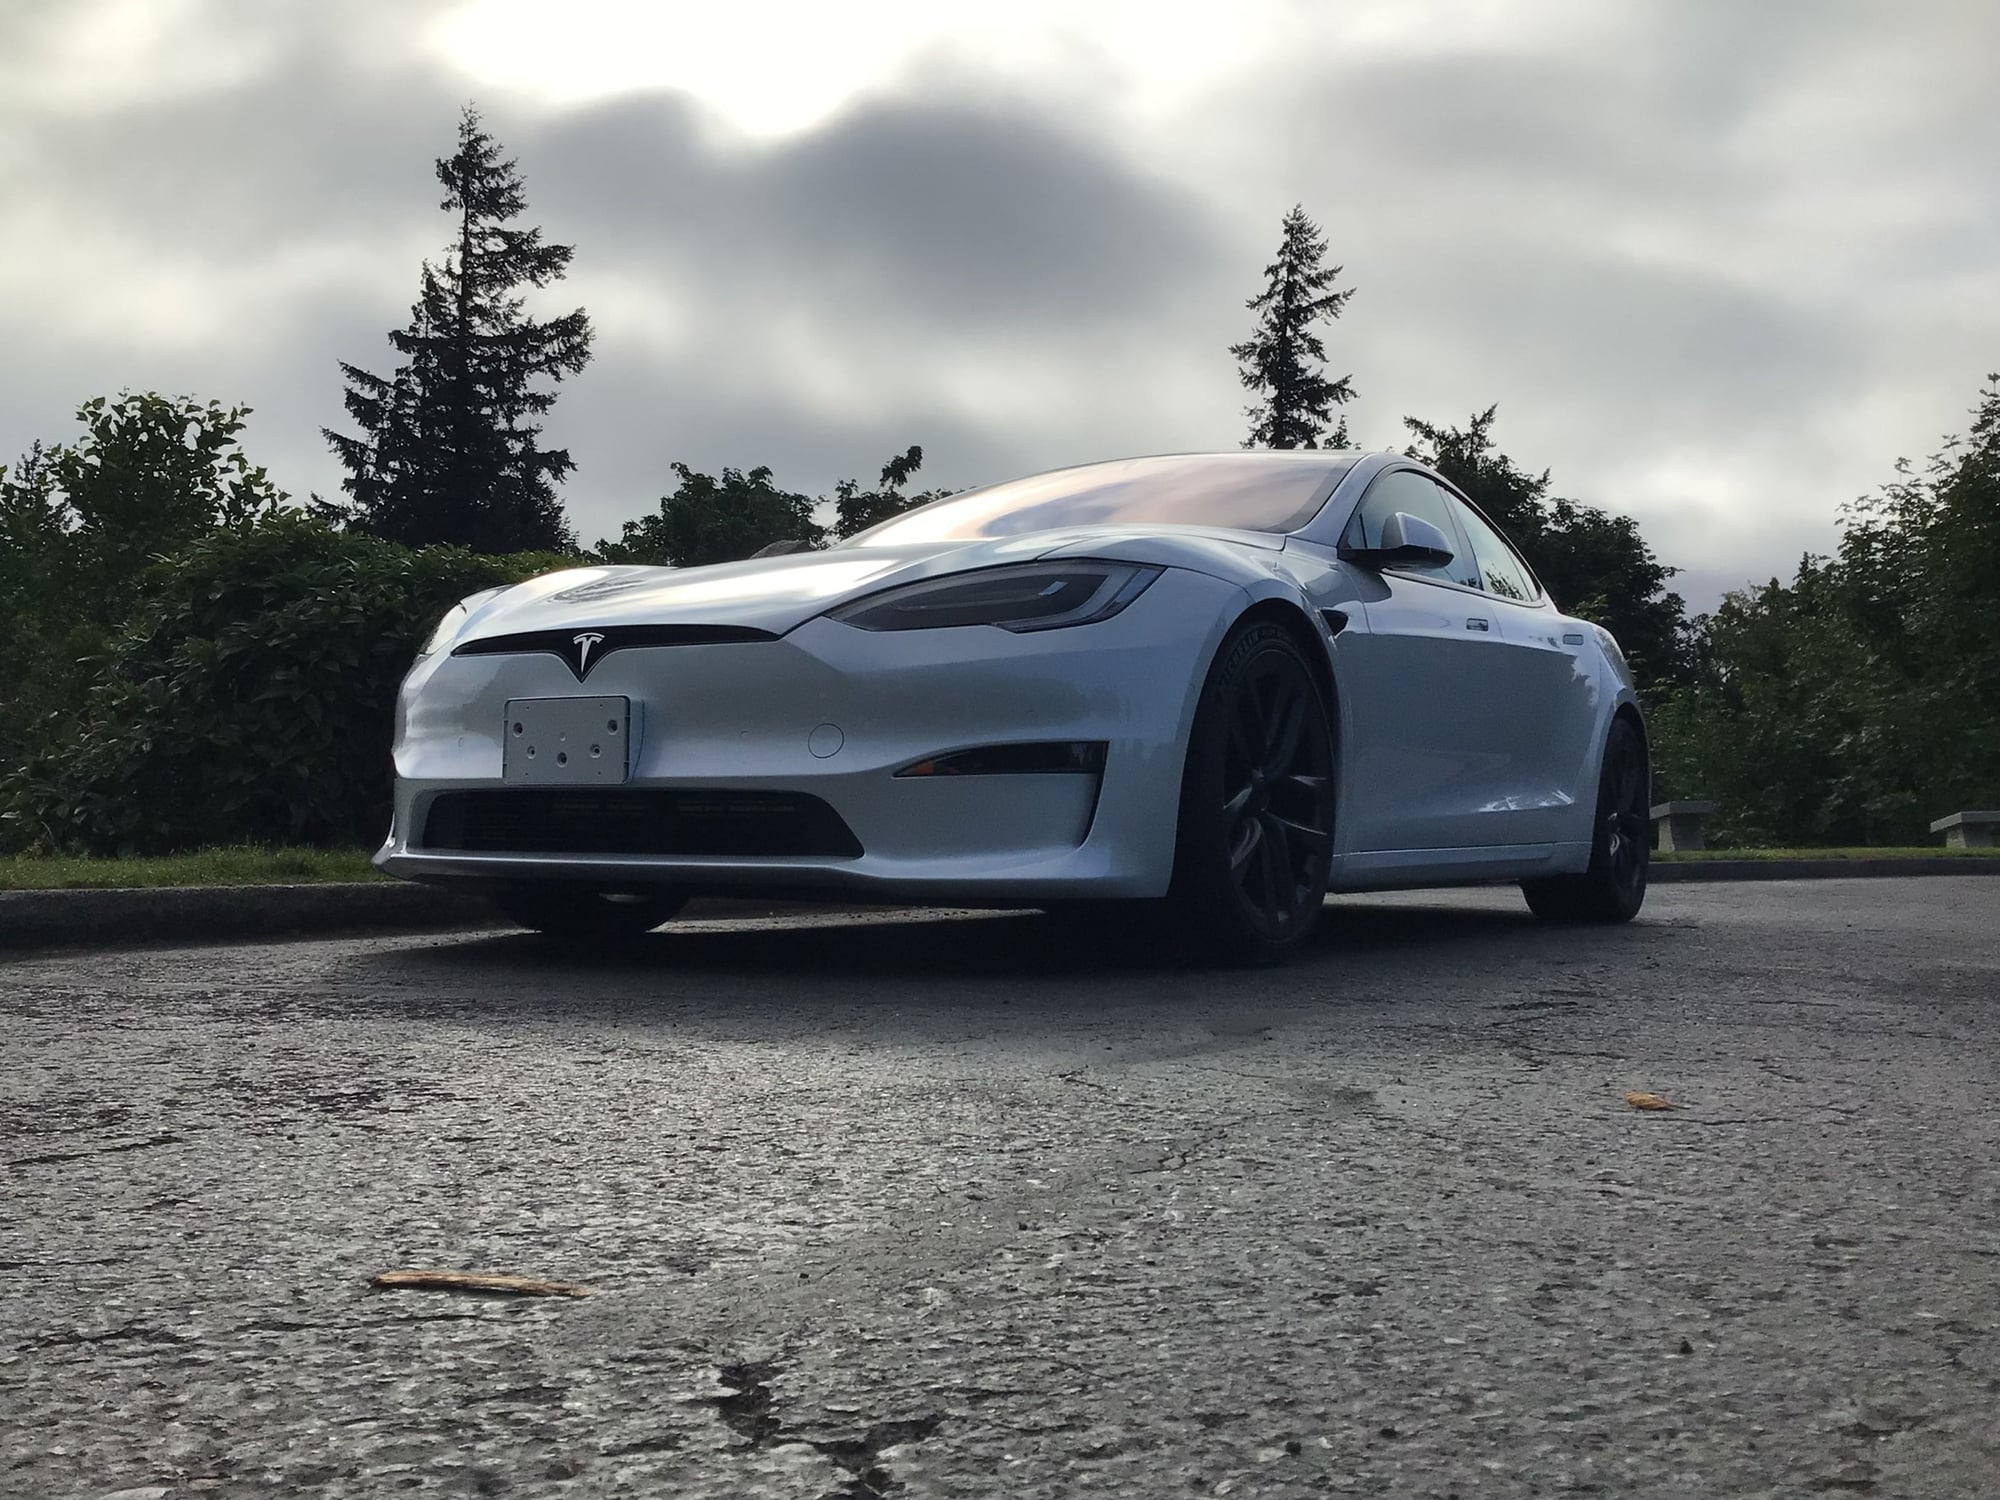 2020 Tesla S - 2021 Tesla Model S PLAID - New - VIN 5YJSA1E66MF43XXXX - 195 Miles - Other - AWD - Automatic - Sedan - White - Portland, OR 97007, United States